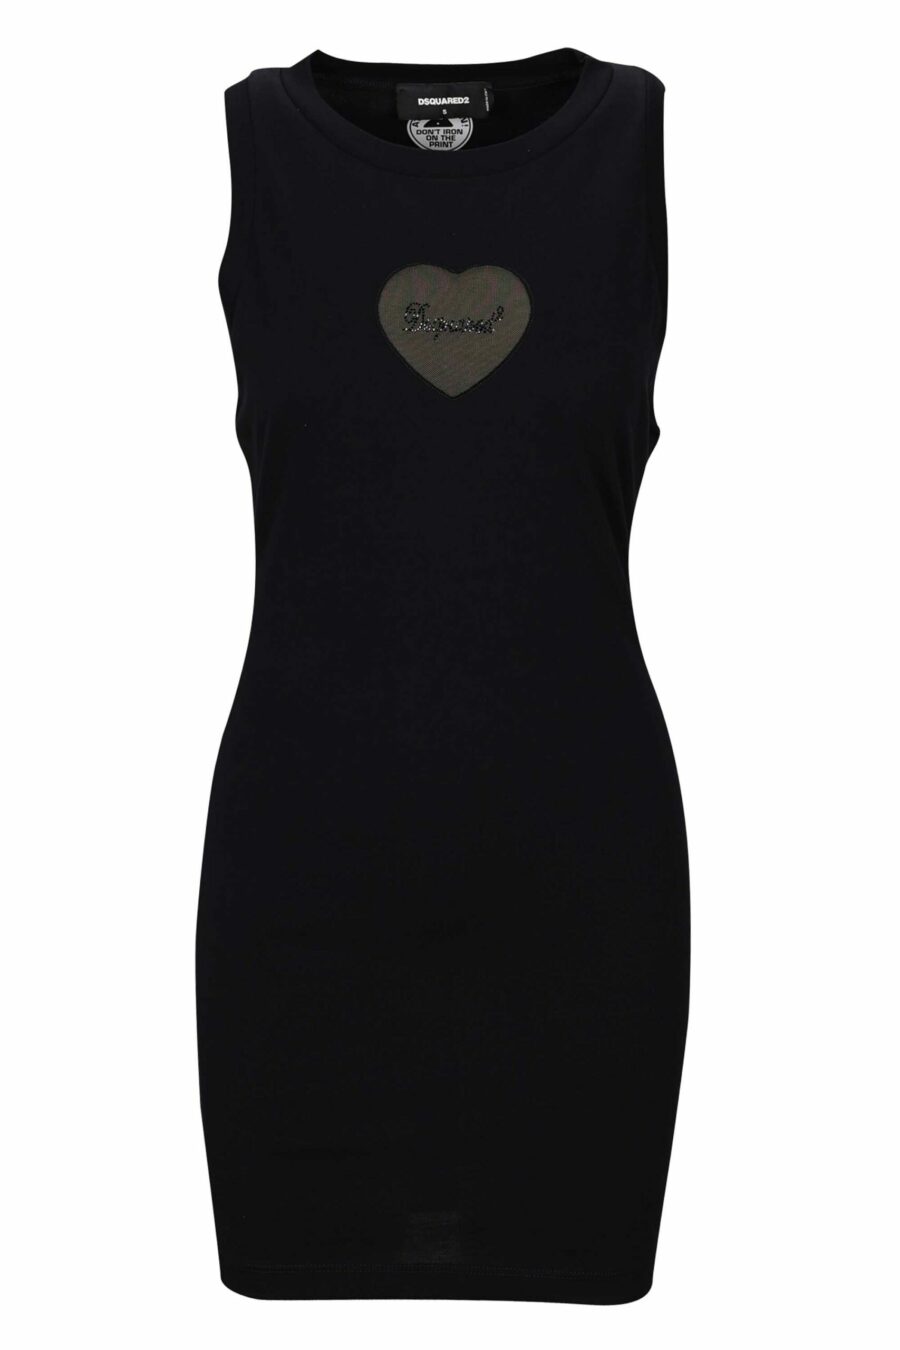 Schwarzes Kleid mit transparentem Herz-Logo in der Mitte - 8054148299798 skaliert